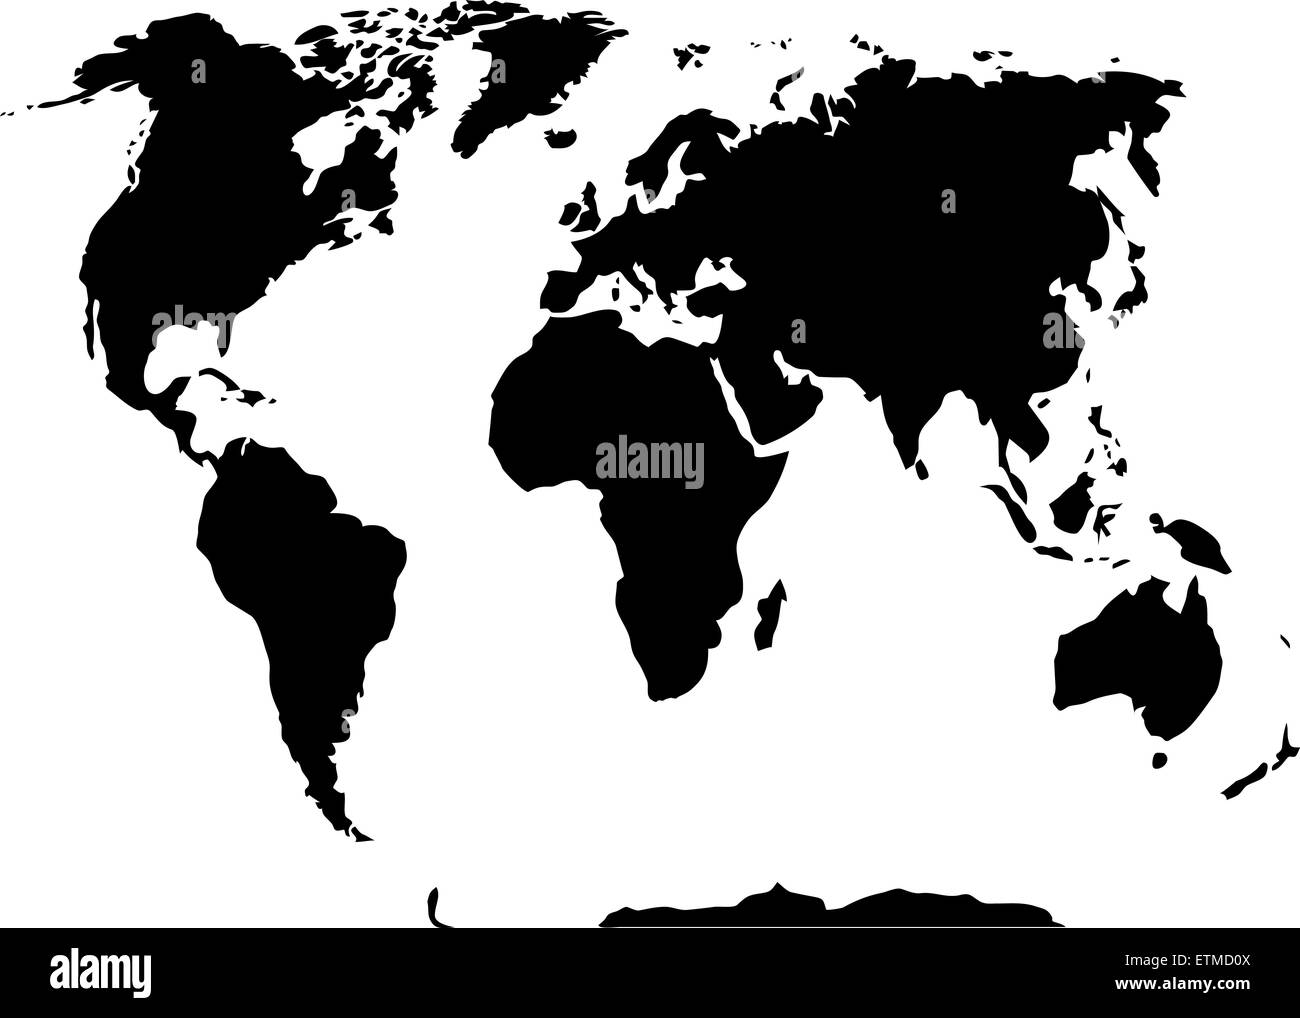 Welt Karte schwarz und weiß. Land und International, Atlas und Globalisierung, Vektor-Grafik-illustration Stockfoto